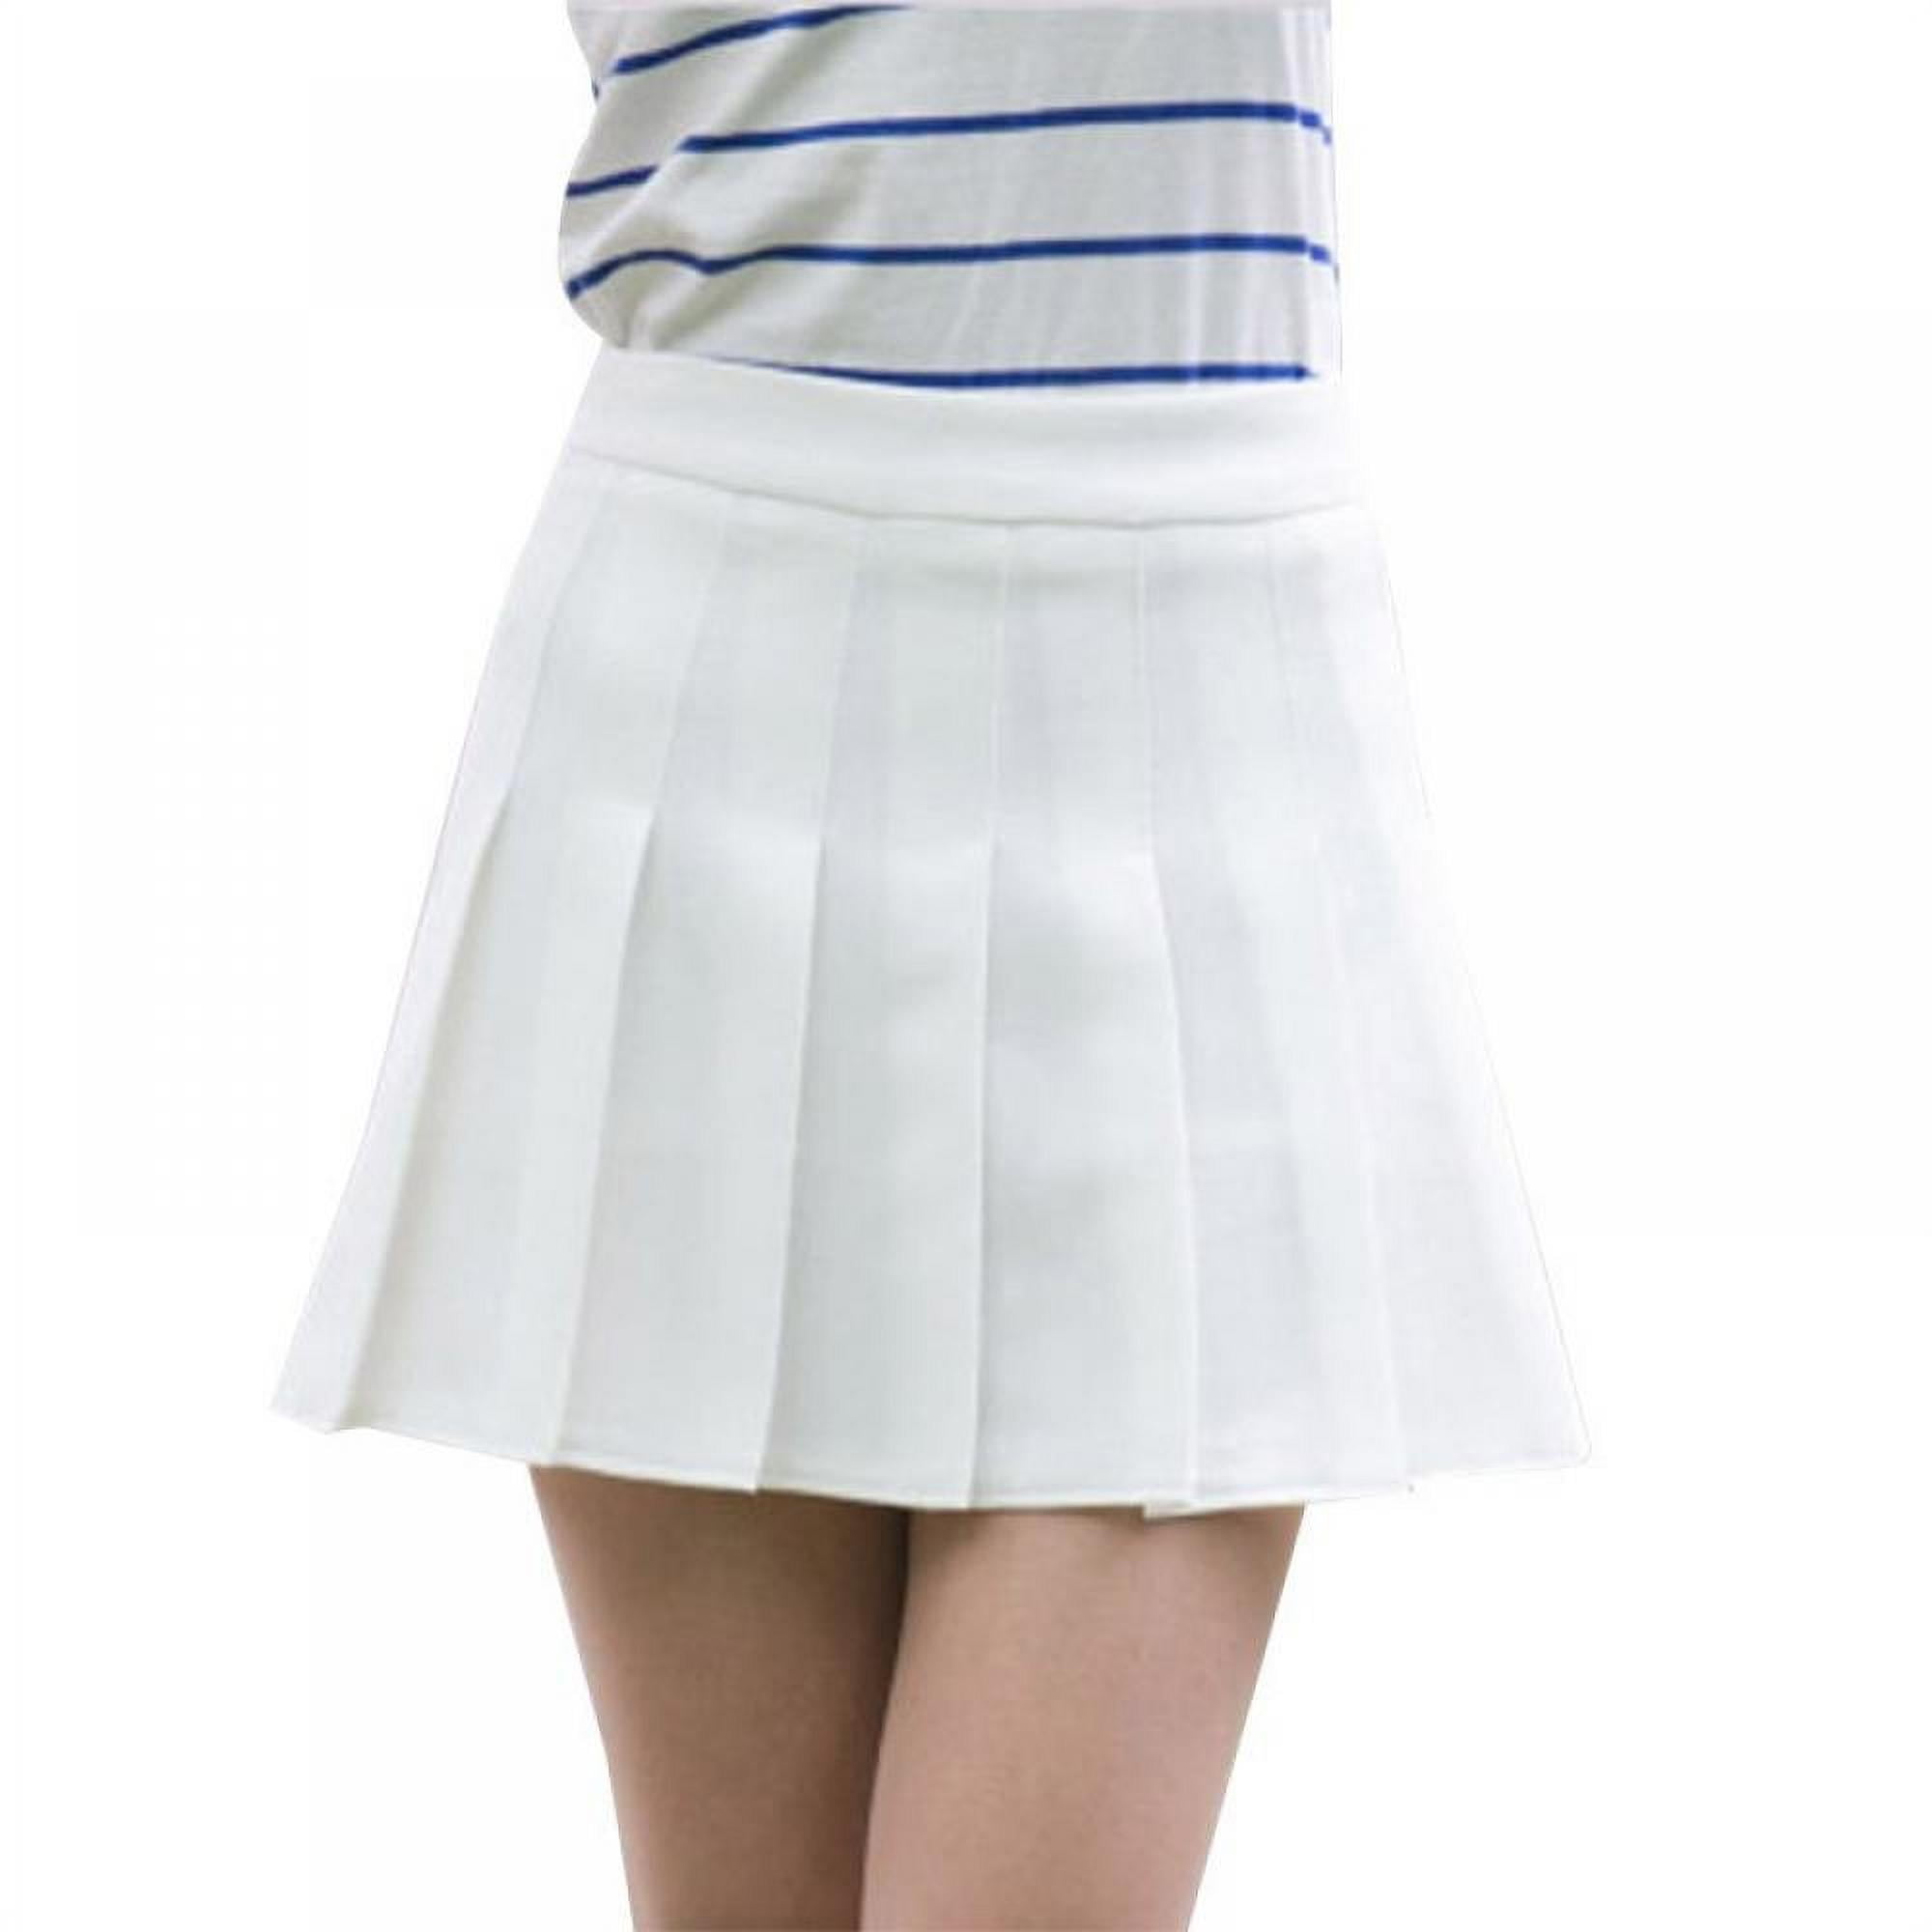 BOLLSLEY Women Girls Pleated A-line Skirt High Waist Tennis School Uniform  Skirts Lining Shorts S-L - Walmart.com